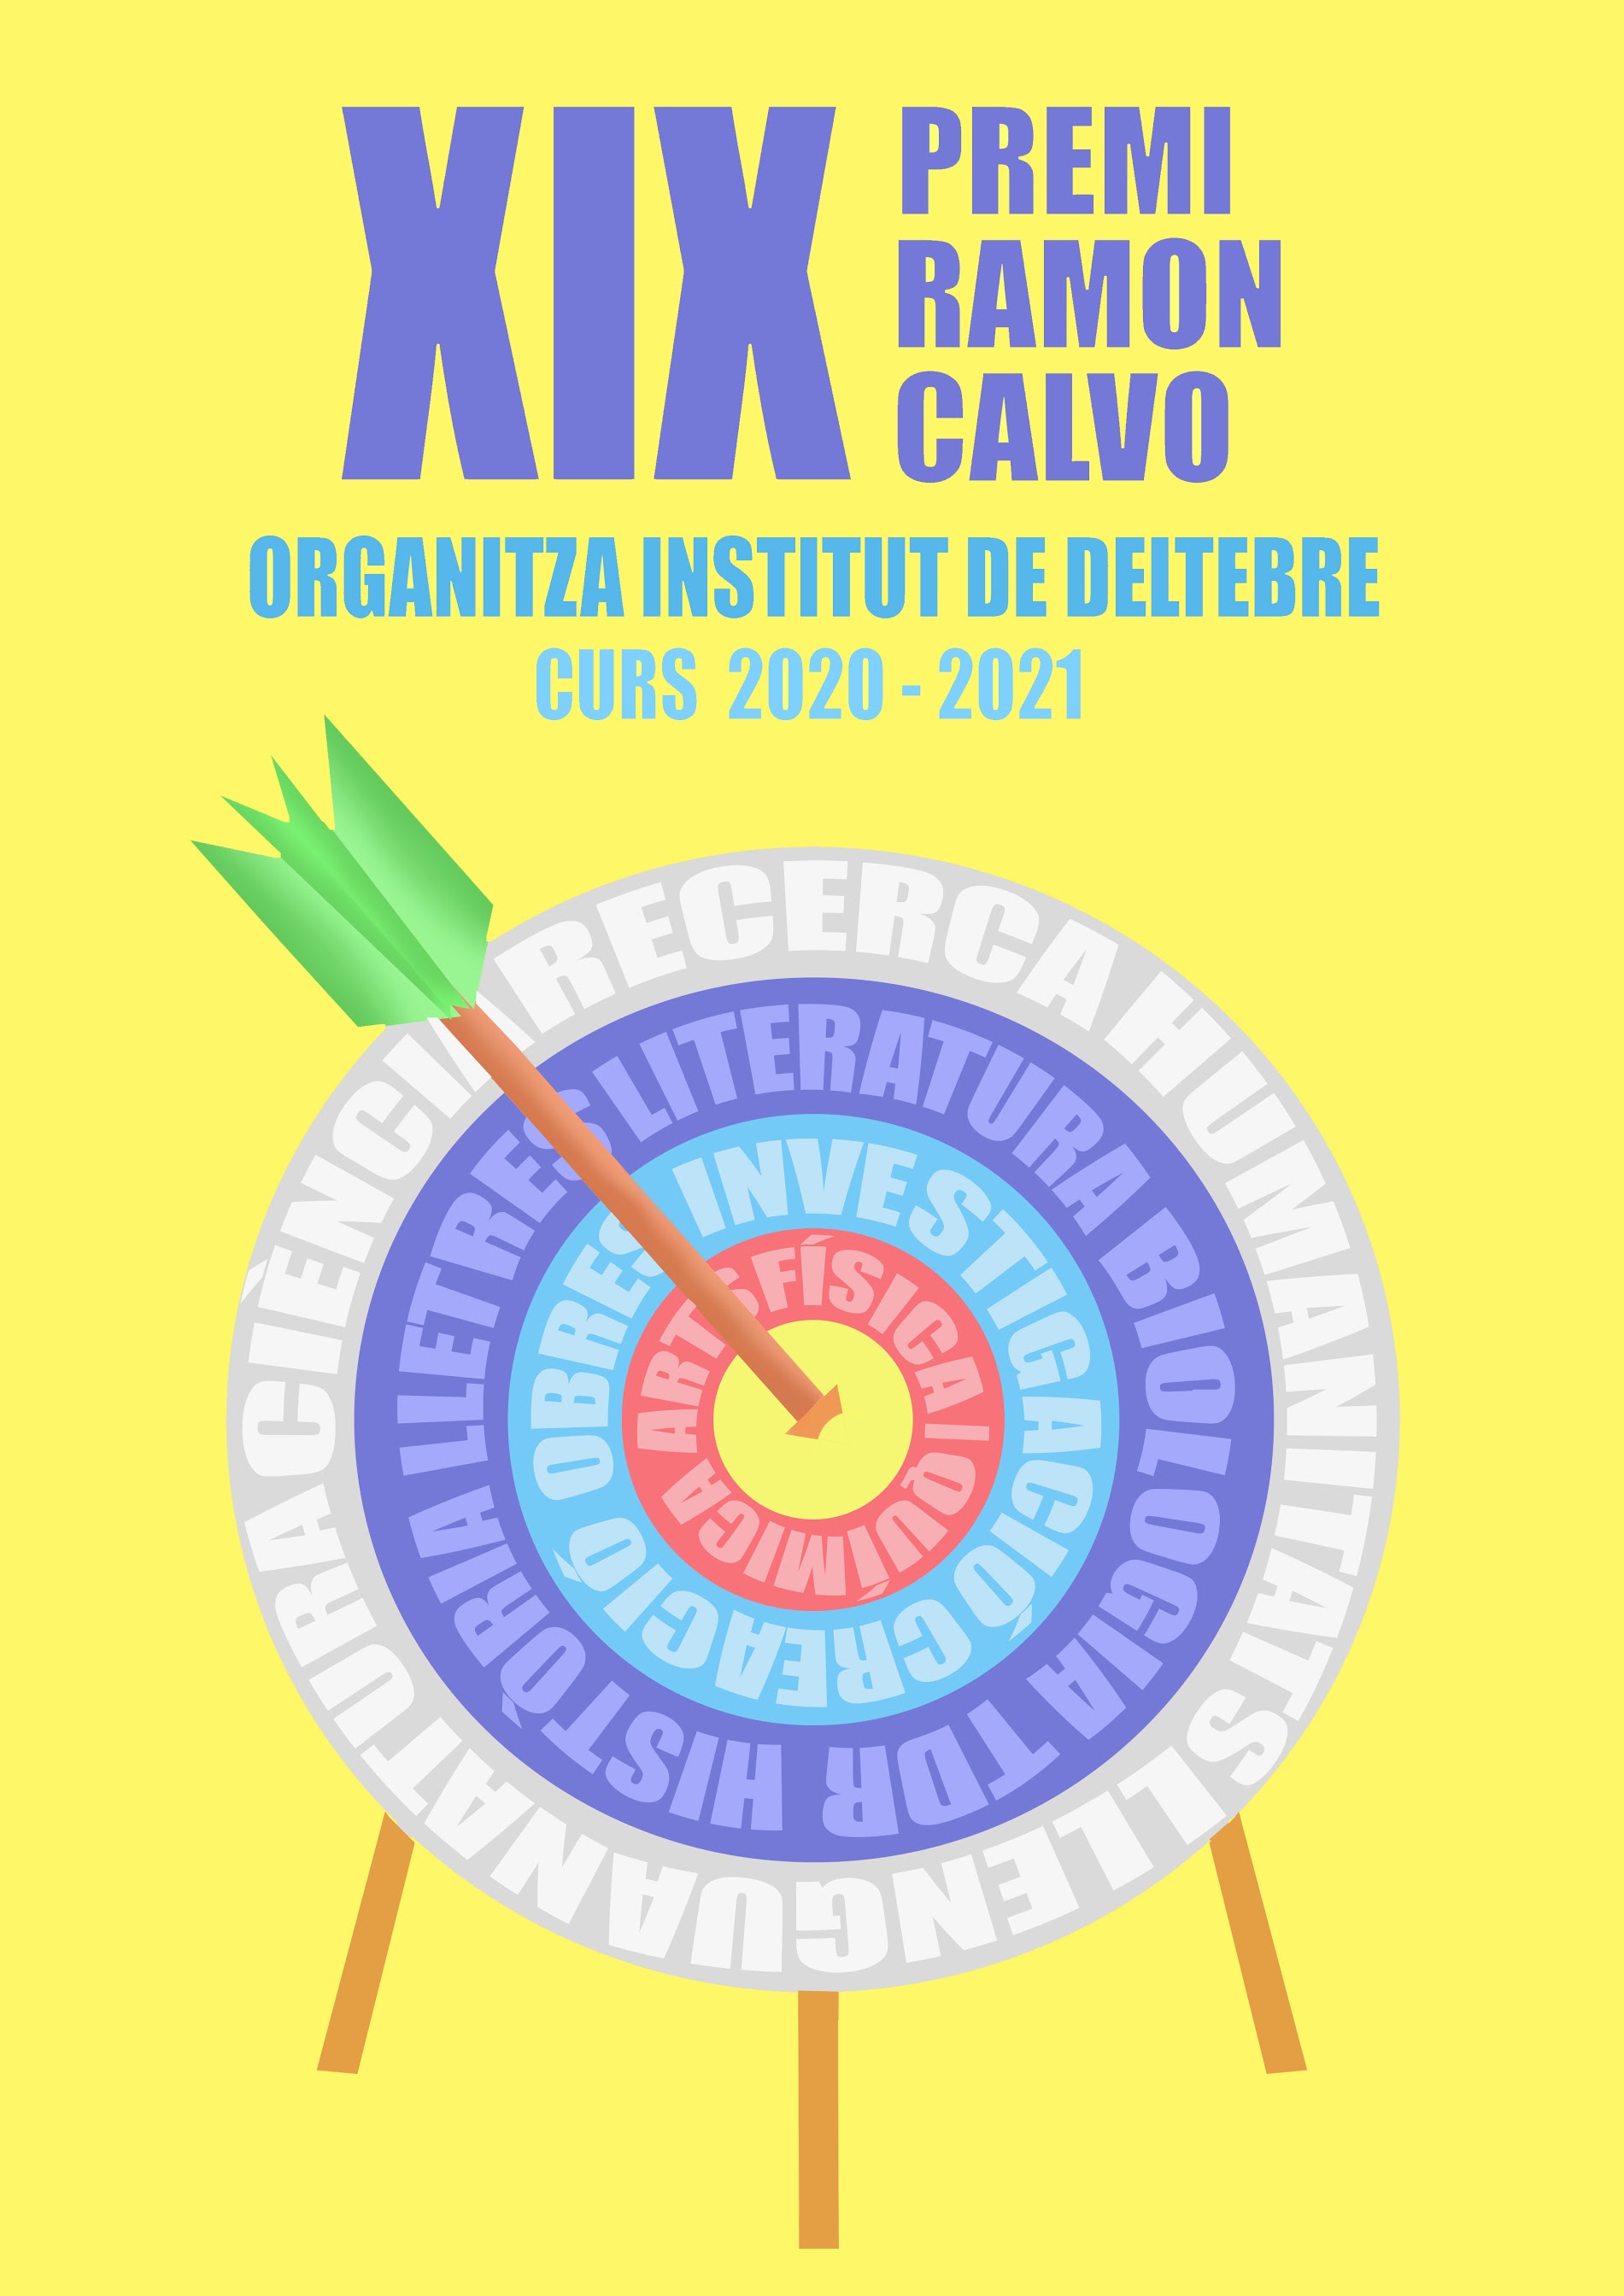 Premi al cartell del XIX Premi Ramon Calvo de l'Institut Deltebre